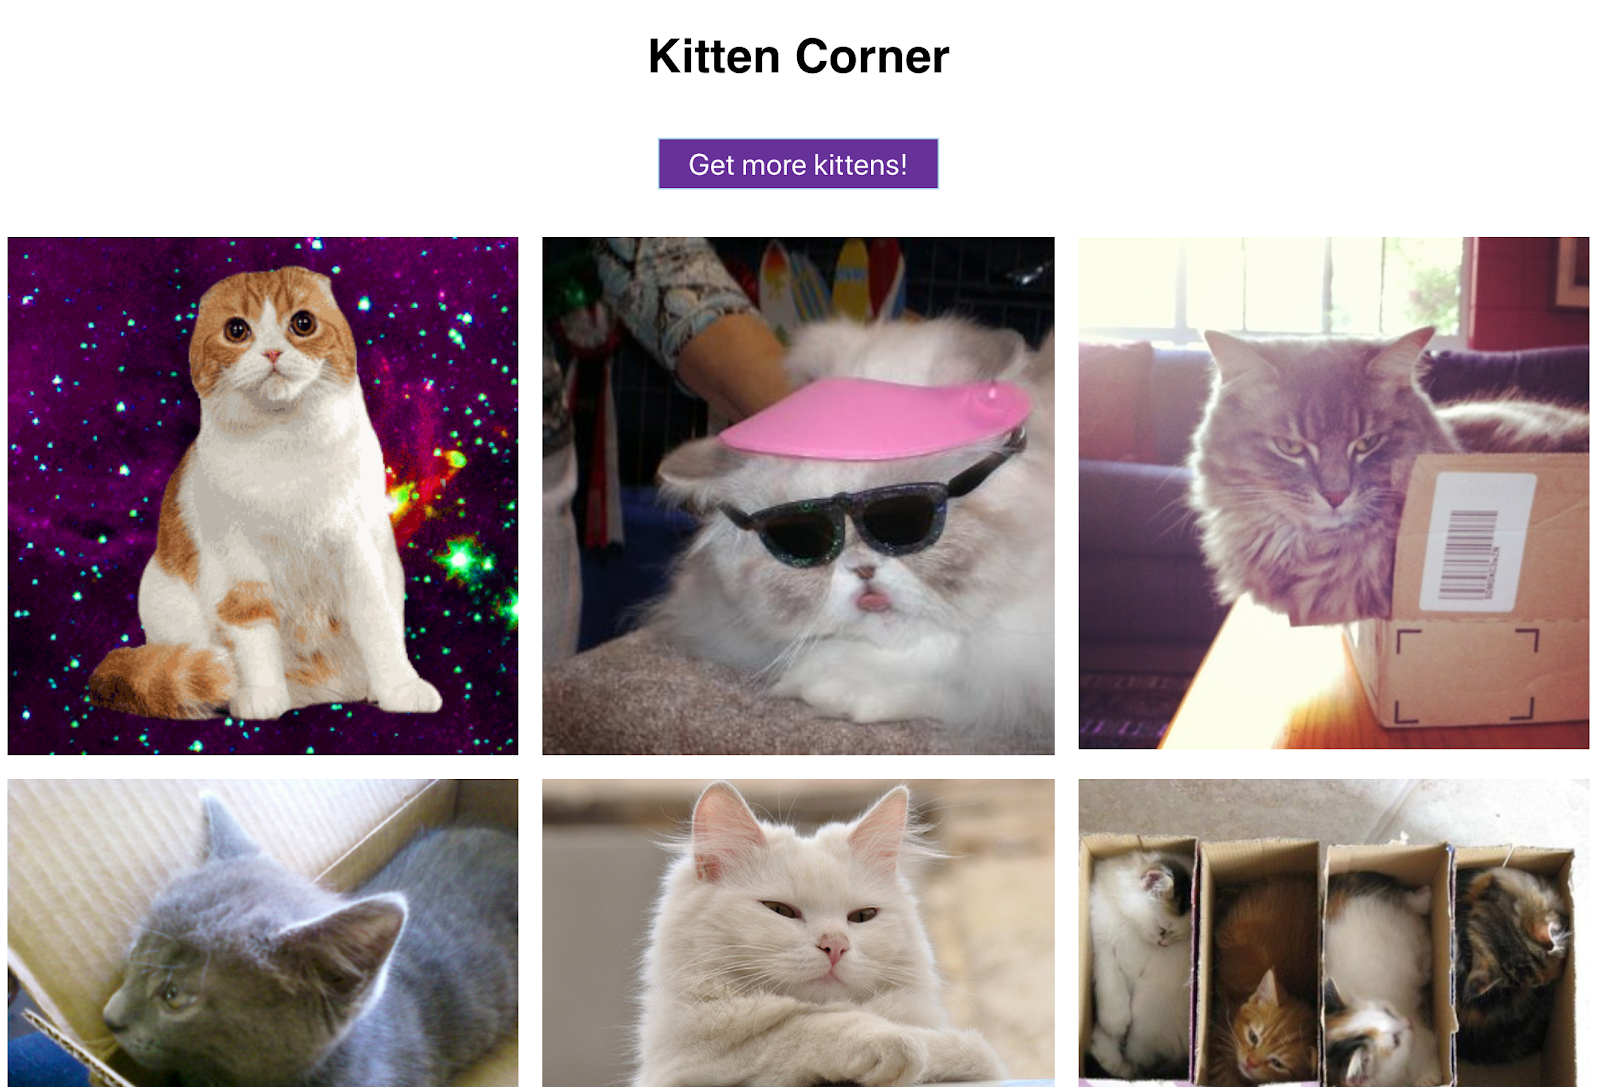 Süße Katzenbilder in einem Raster und eine Schaltfläche zum Anzeigen weiterer Bilder – diese Web-App lässt keine Wünsche offen.